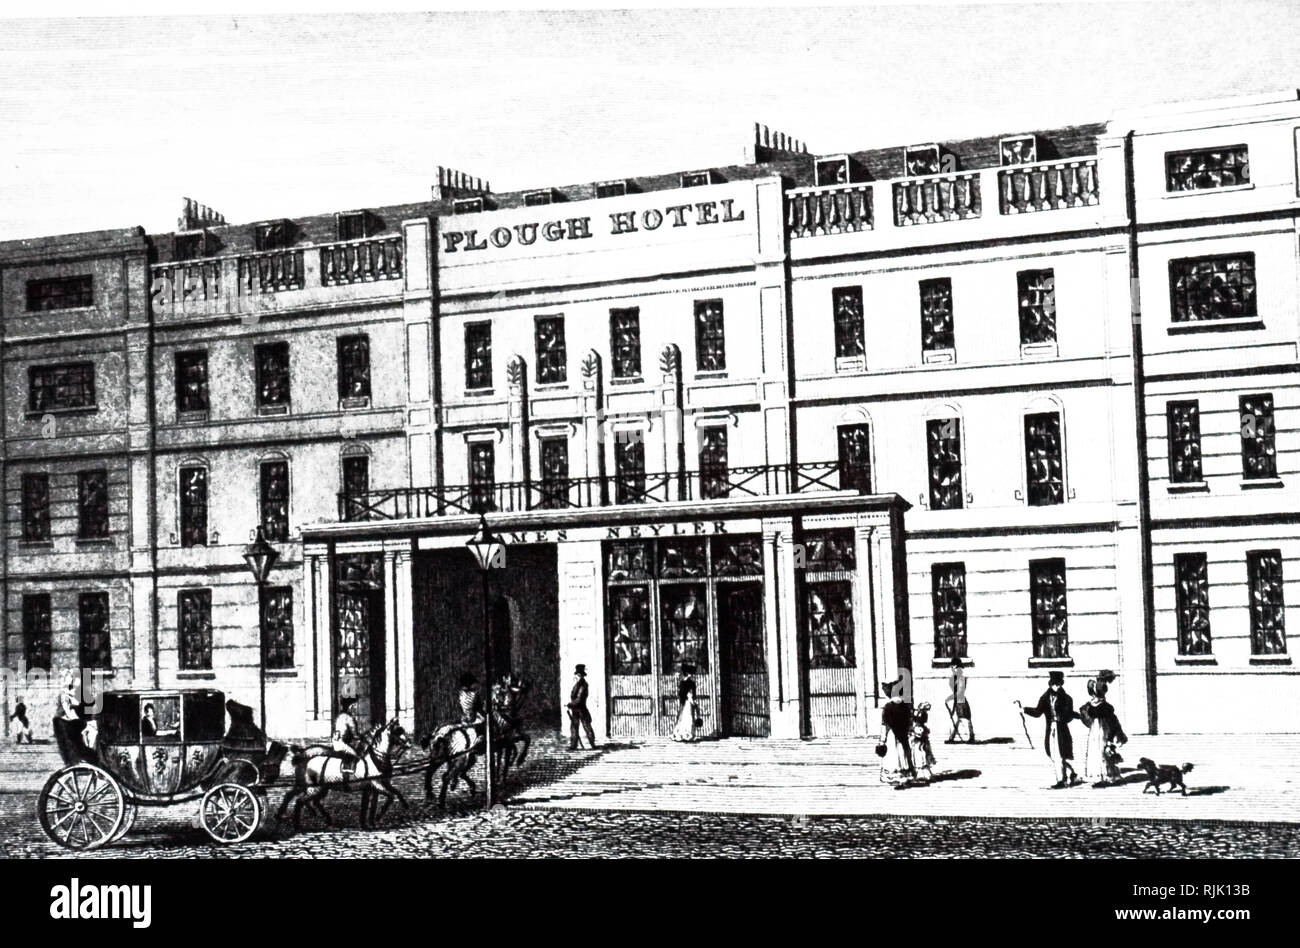 Ein kupferstich mit der Darstellung der Pflug Hotel, Cheltenham Spa. Vom 19. Jahrhundert Stockfoto